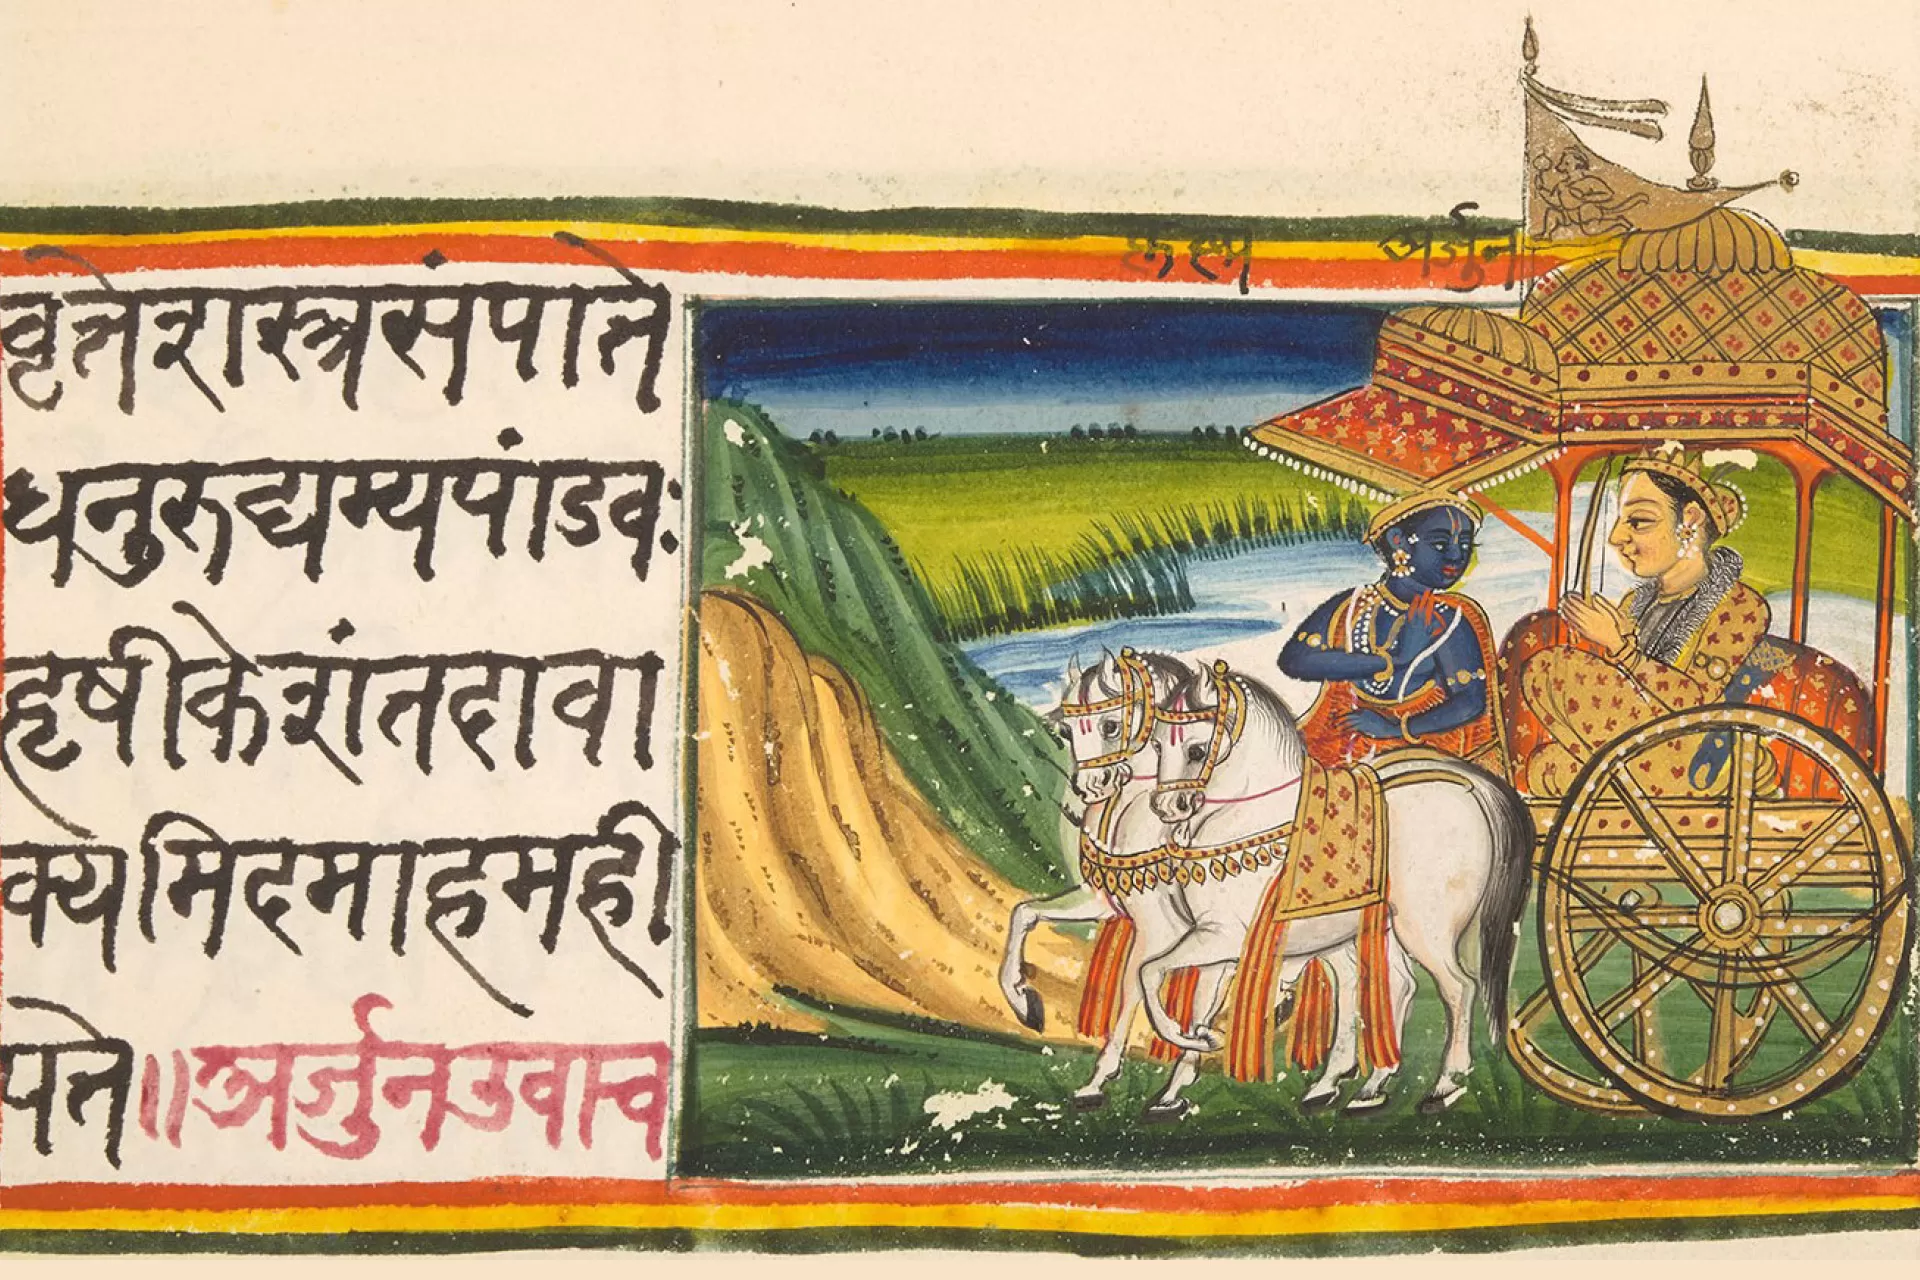 Ein illustriertes Sanskrit-Manuskript aus dem 19. Jahrhundert aus der Bhagavad Gita, entstanden zwischen dem 5. und 2. Jahrhundert v. Chr.